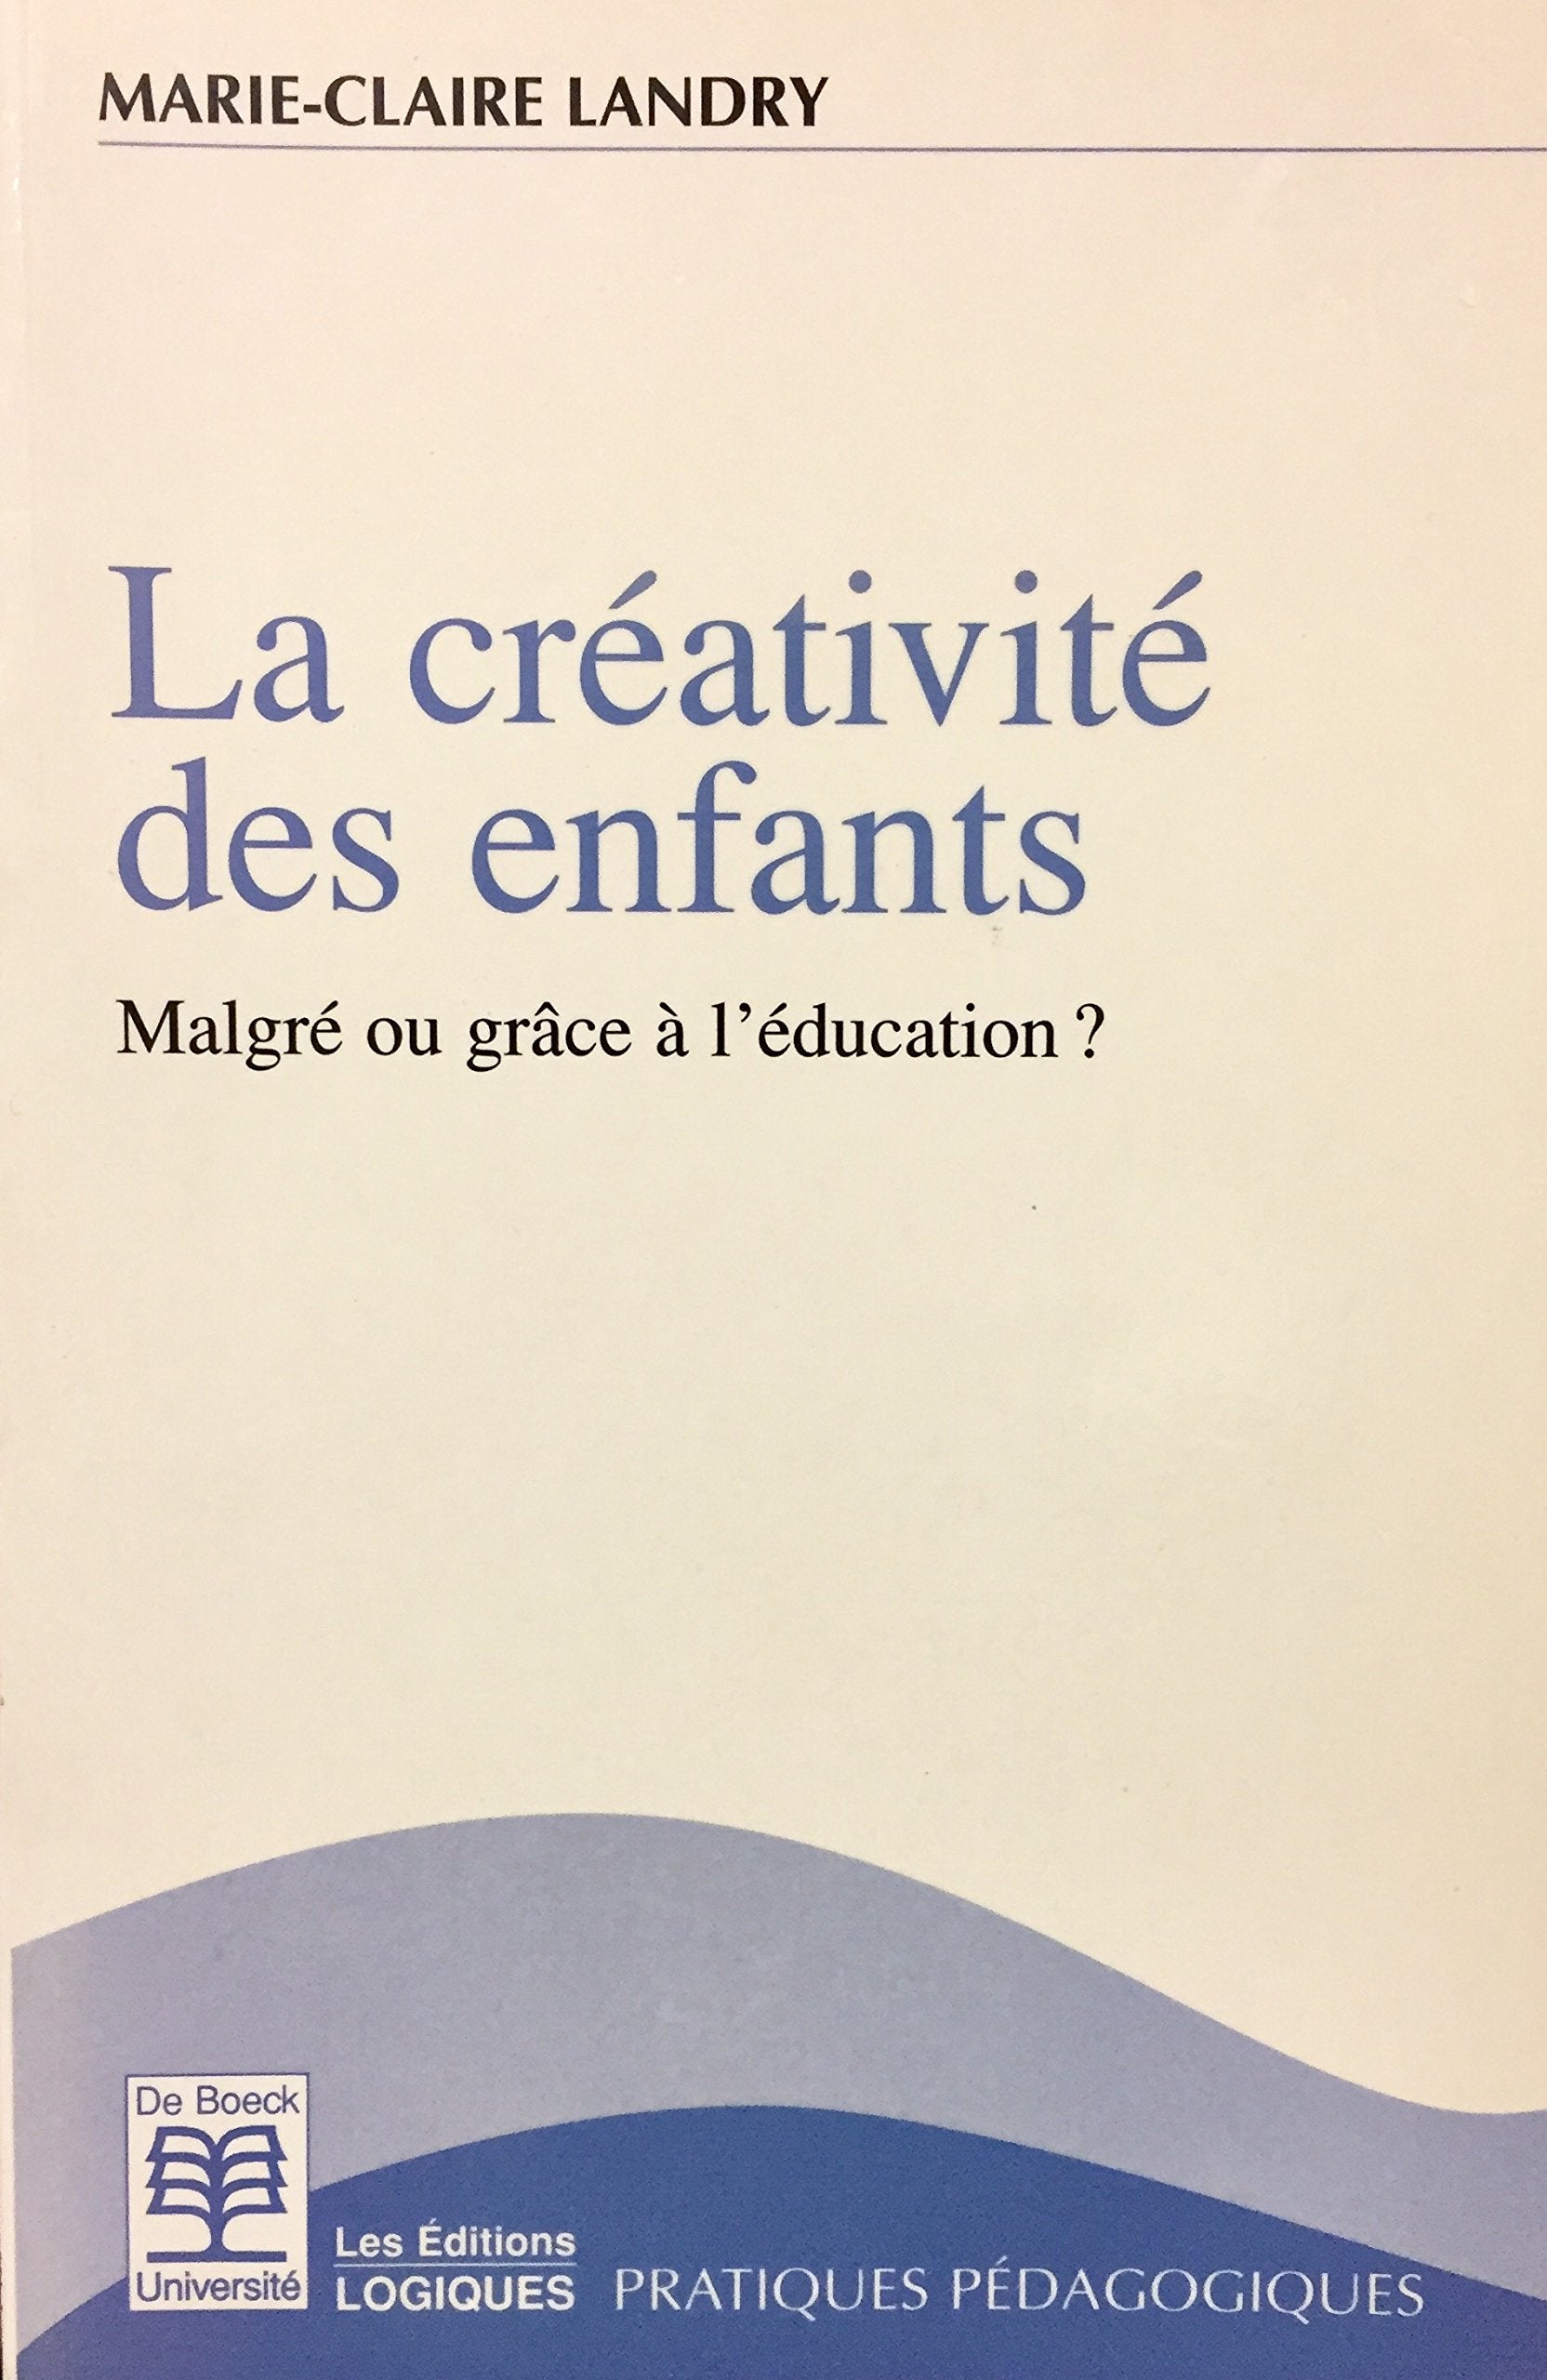 Livre ISBN 2804125599 La créativité des enfants : Malgré ou grâce à l'éducation?